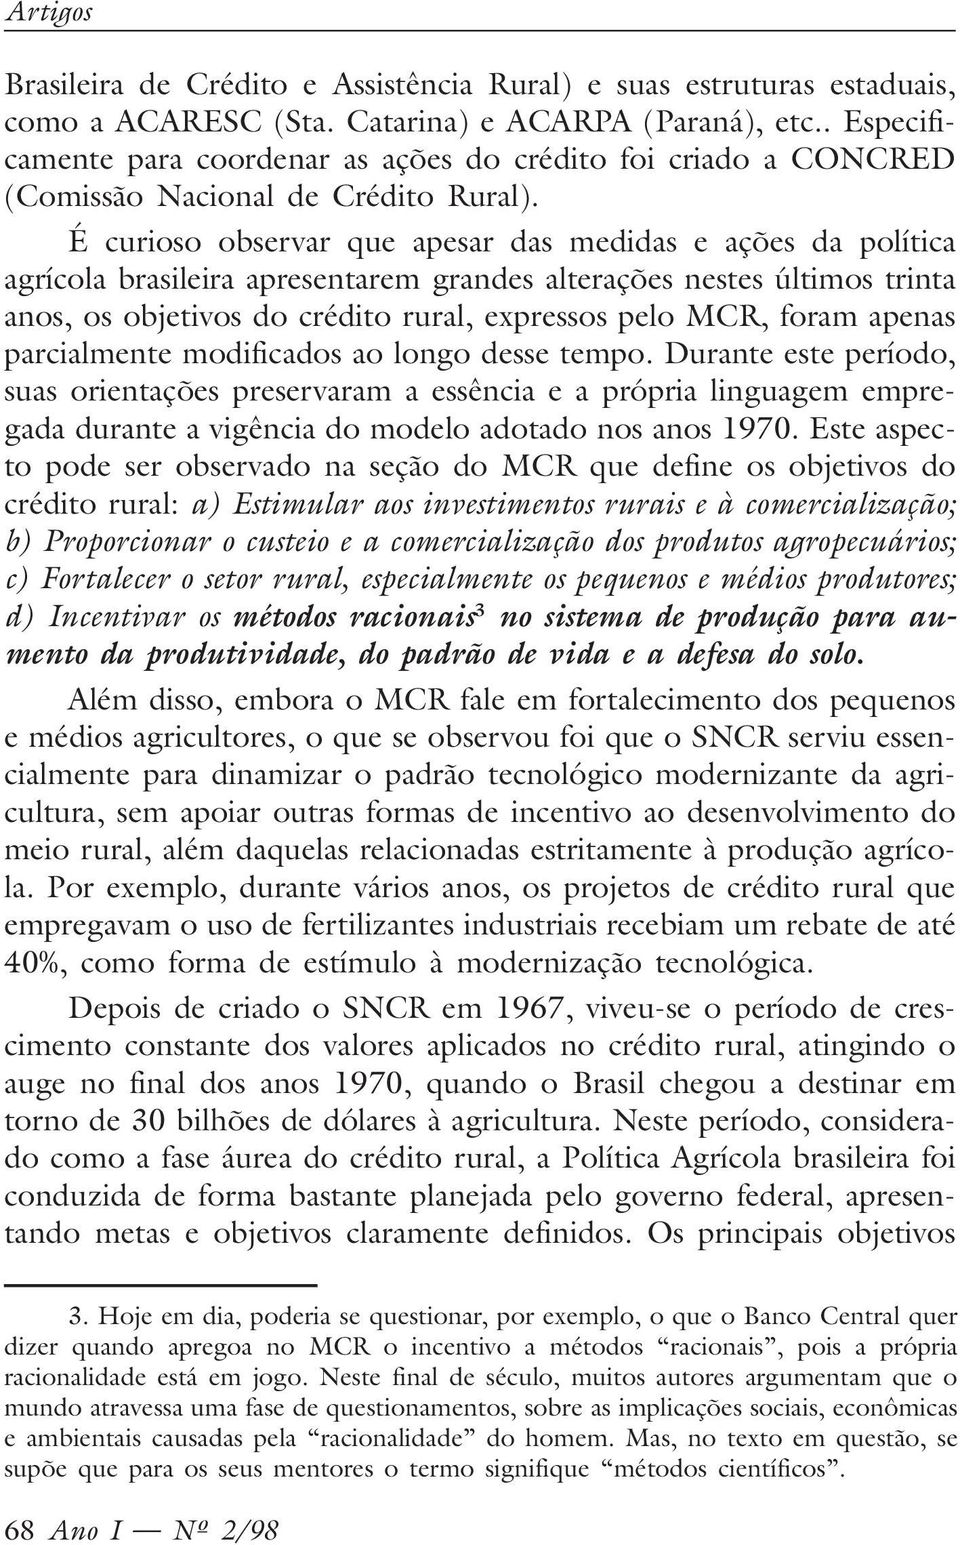 É curioso observar que apesar das medidas e ações da política agrícola brasileira apresentarem grandes alterações nestes últimos trinta anos, os objetivos do crédito rural, expressos pelo MCR, foram